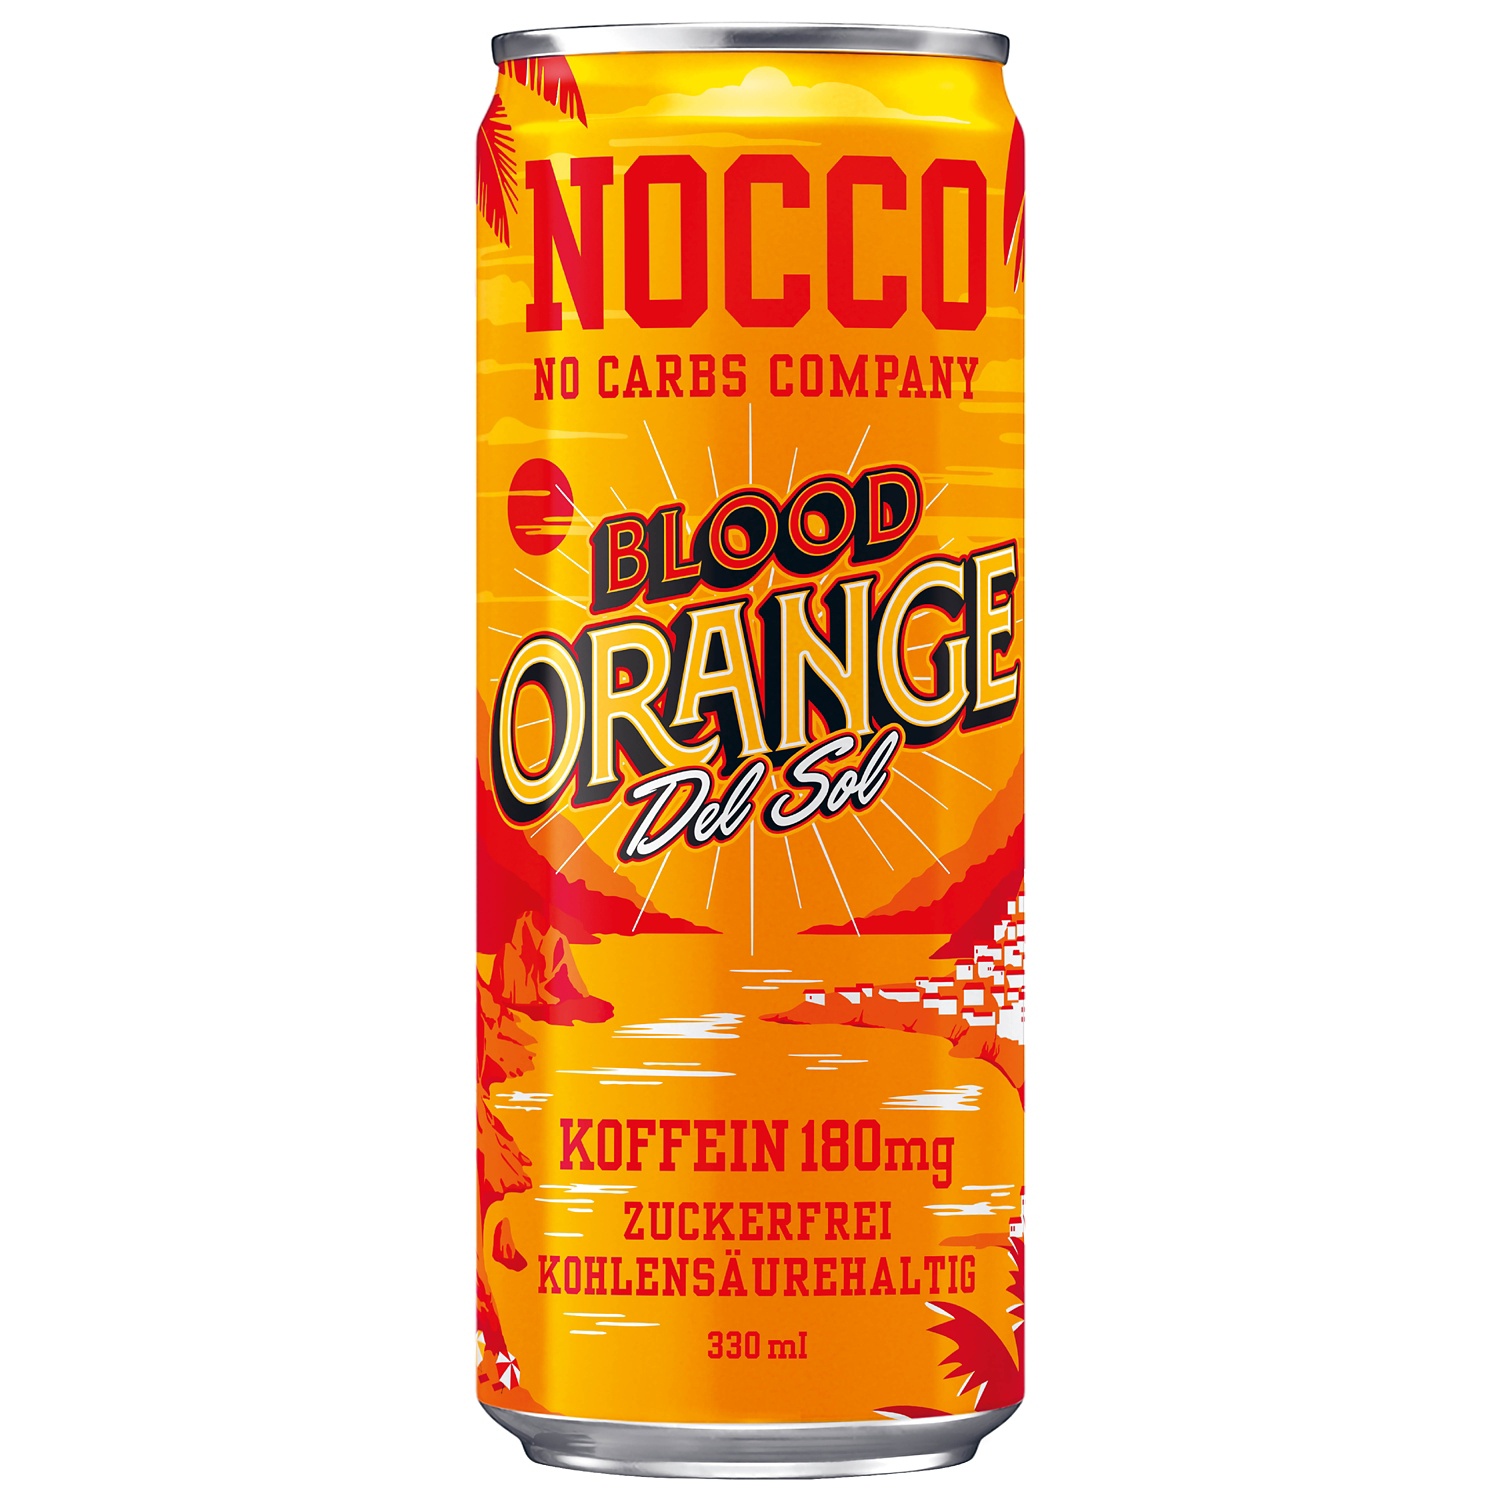 NOCCO NO CARBS COMPANY, Blood Orange